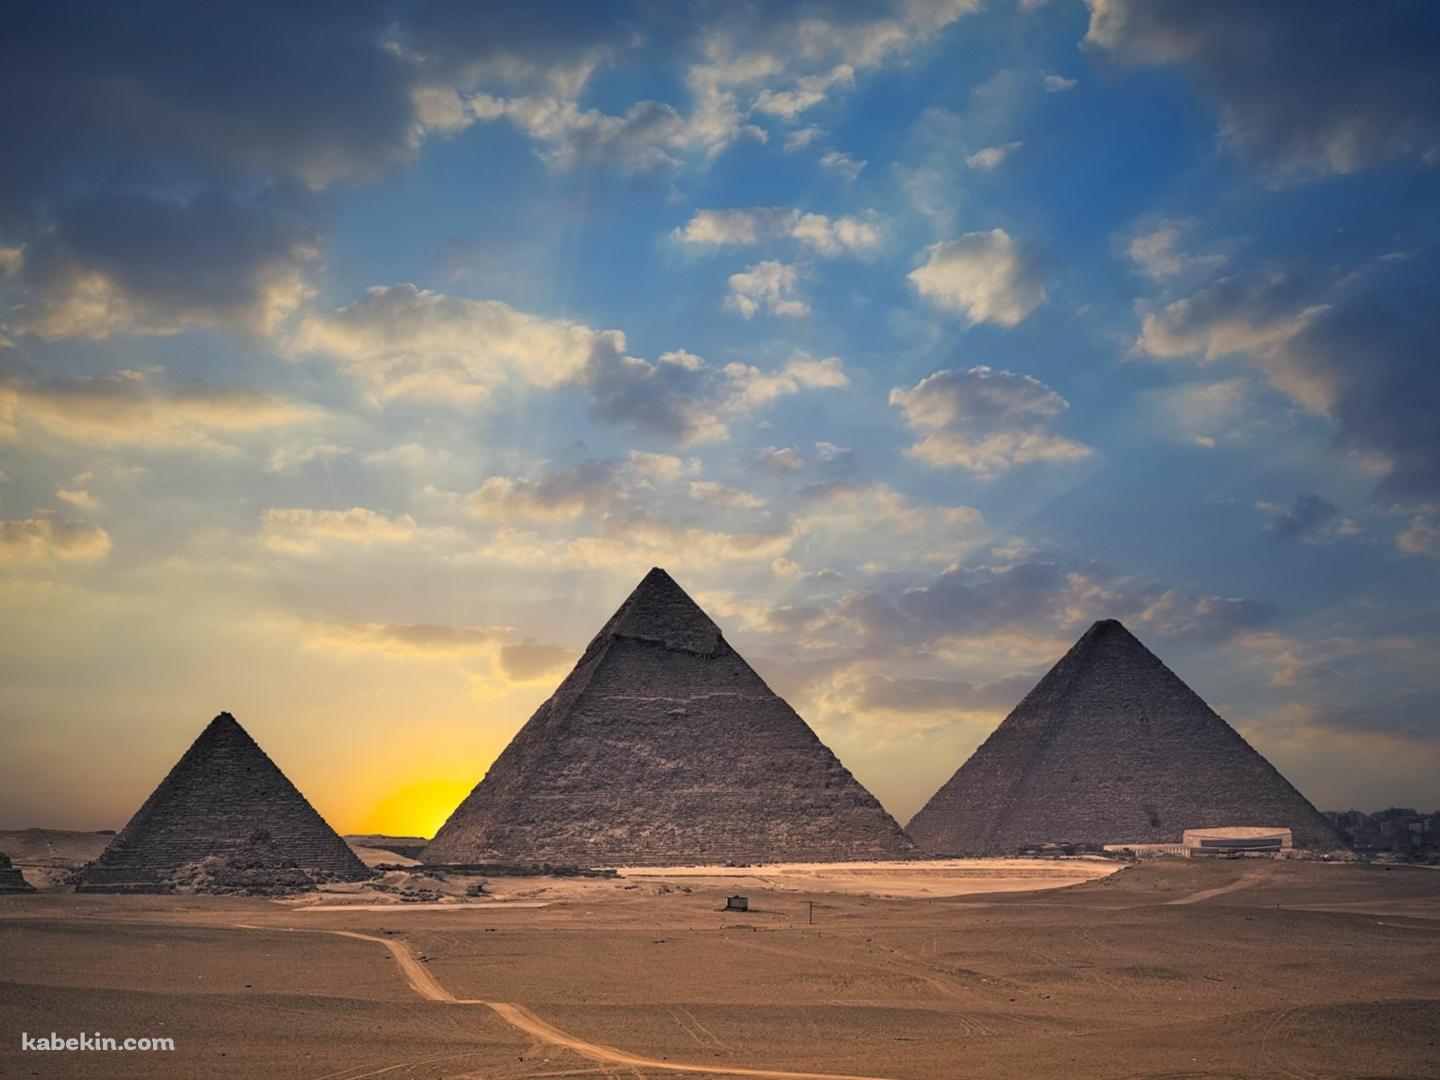 エジプトの並んだピラミッドの壁紙(1440px x 1080px) 高画質 PC・デスクトップ用